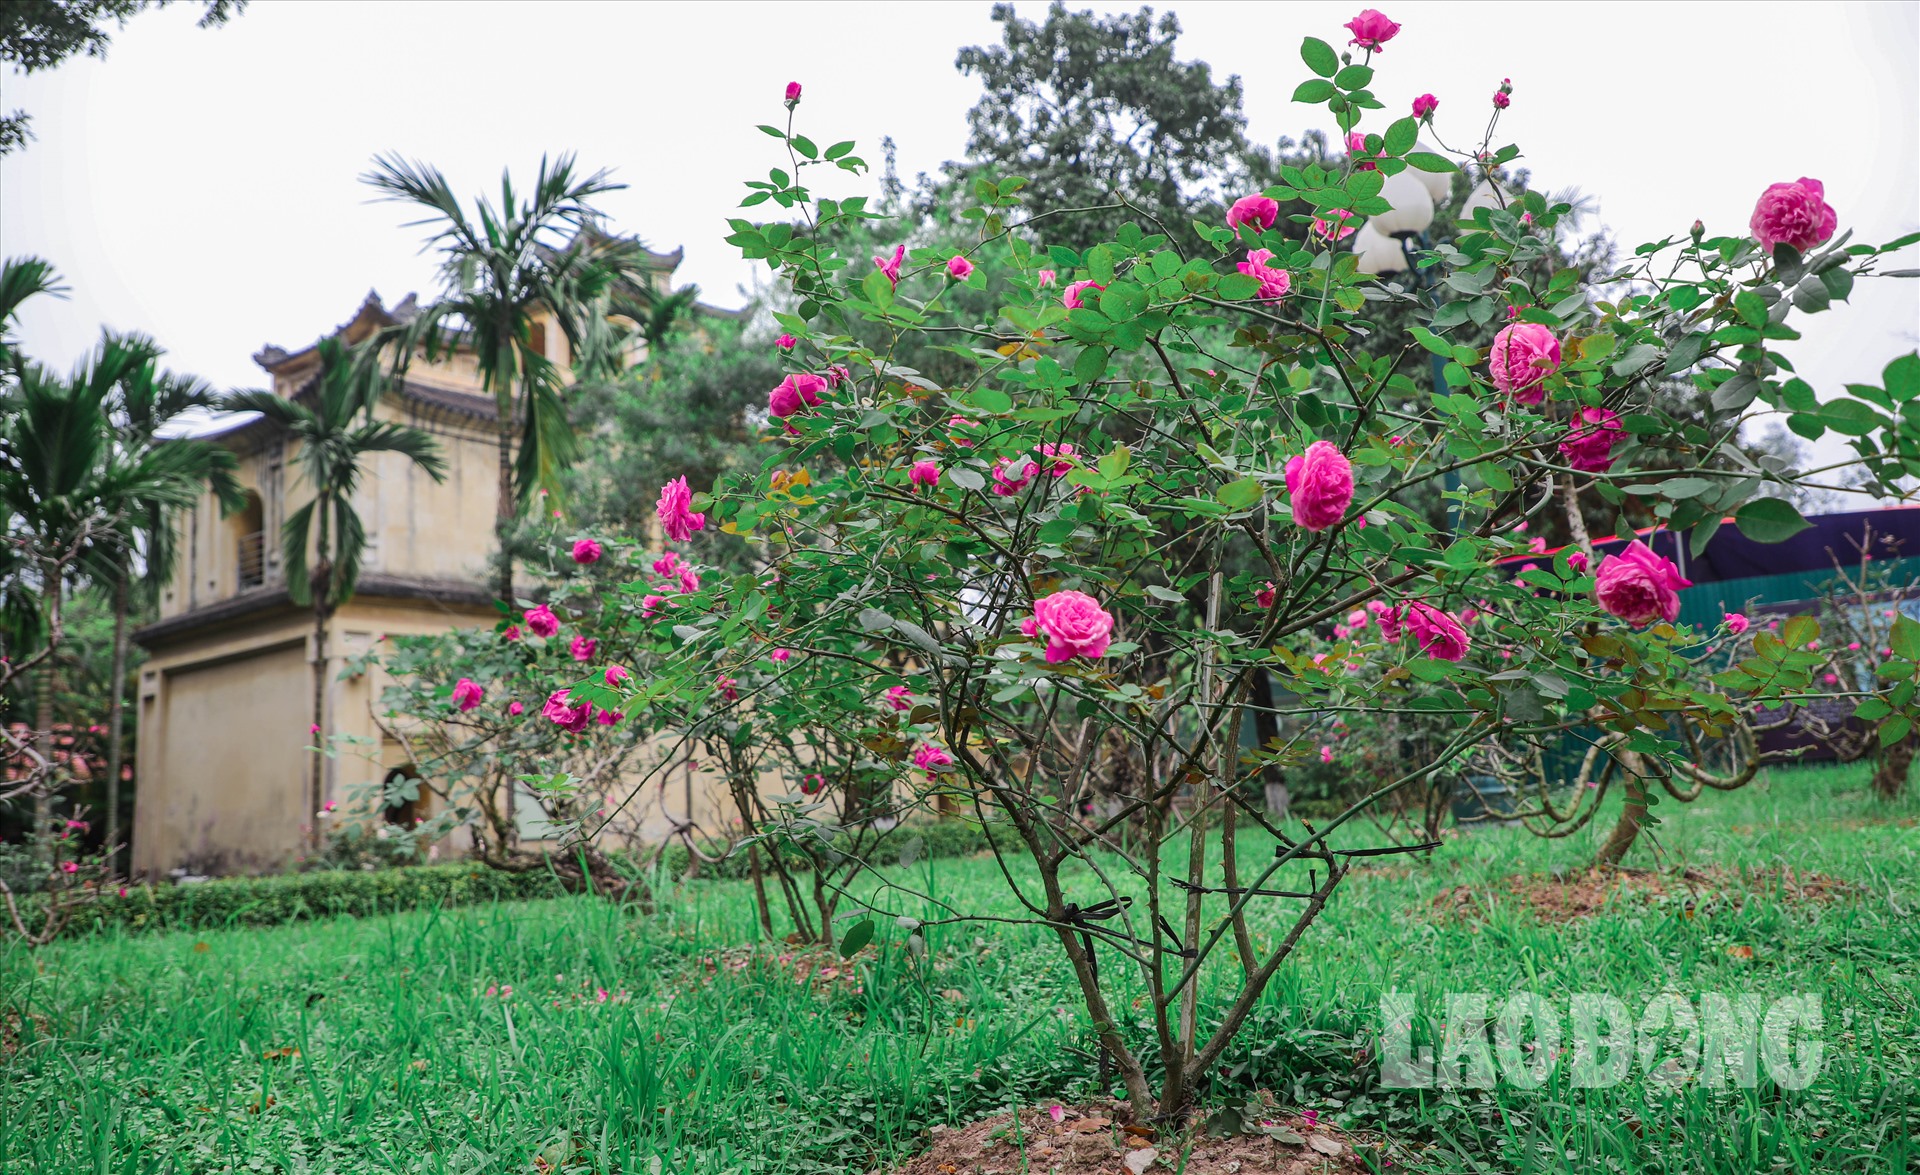 Hơn 500 cây hoa hồng được đem về trồng tại Hoàng Thành Thăng Long cách đây gần 3 tháng đã bắt đầu bung nở.